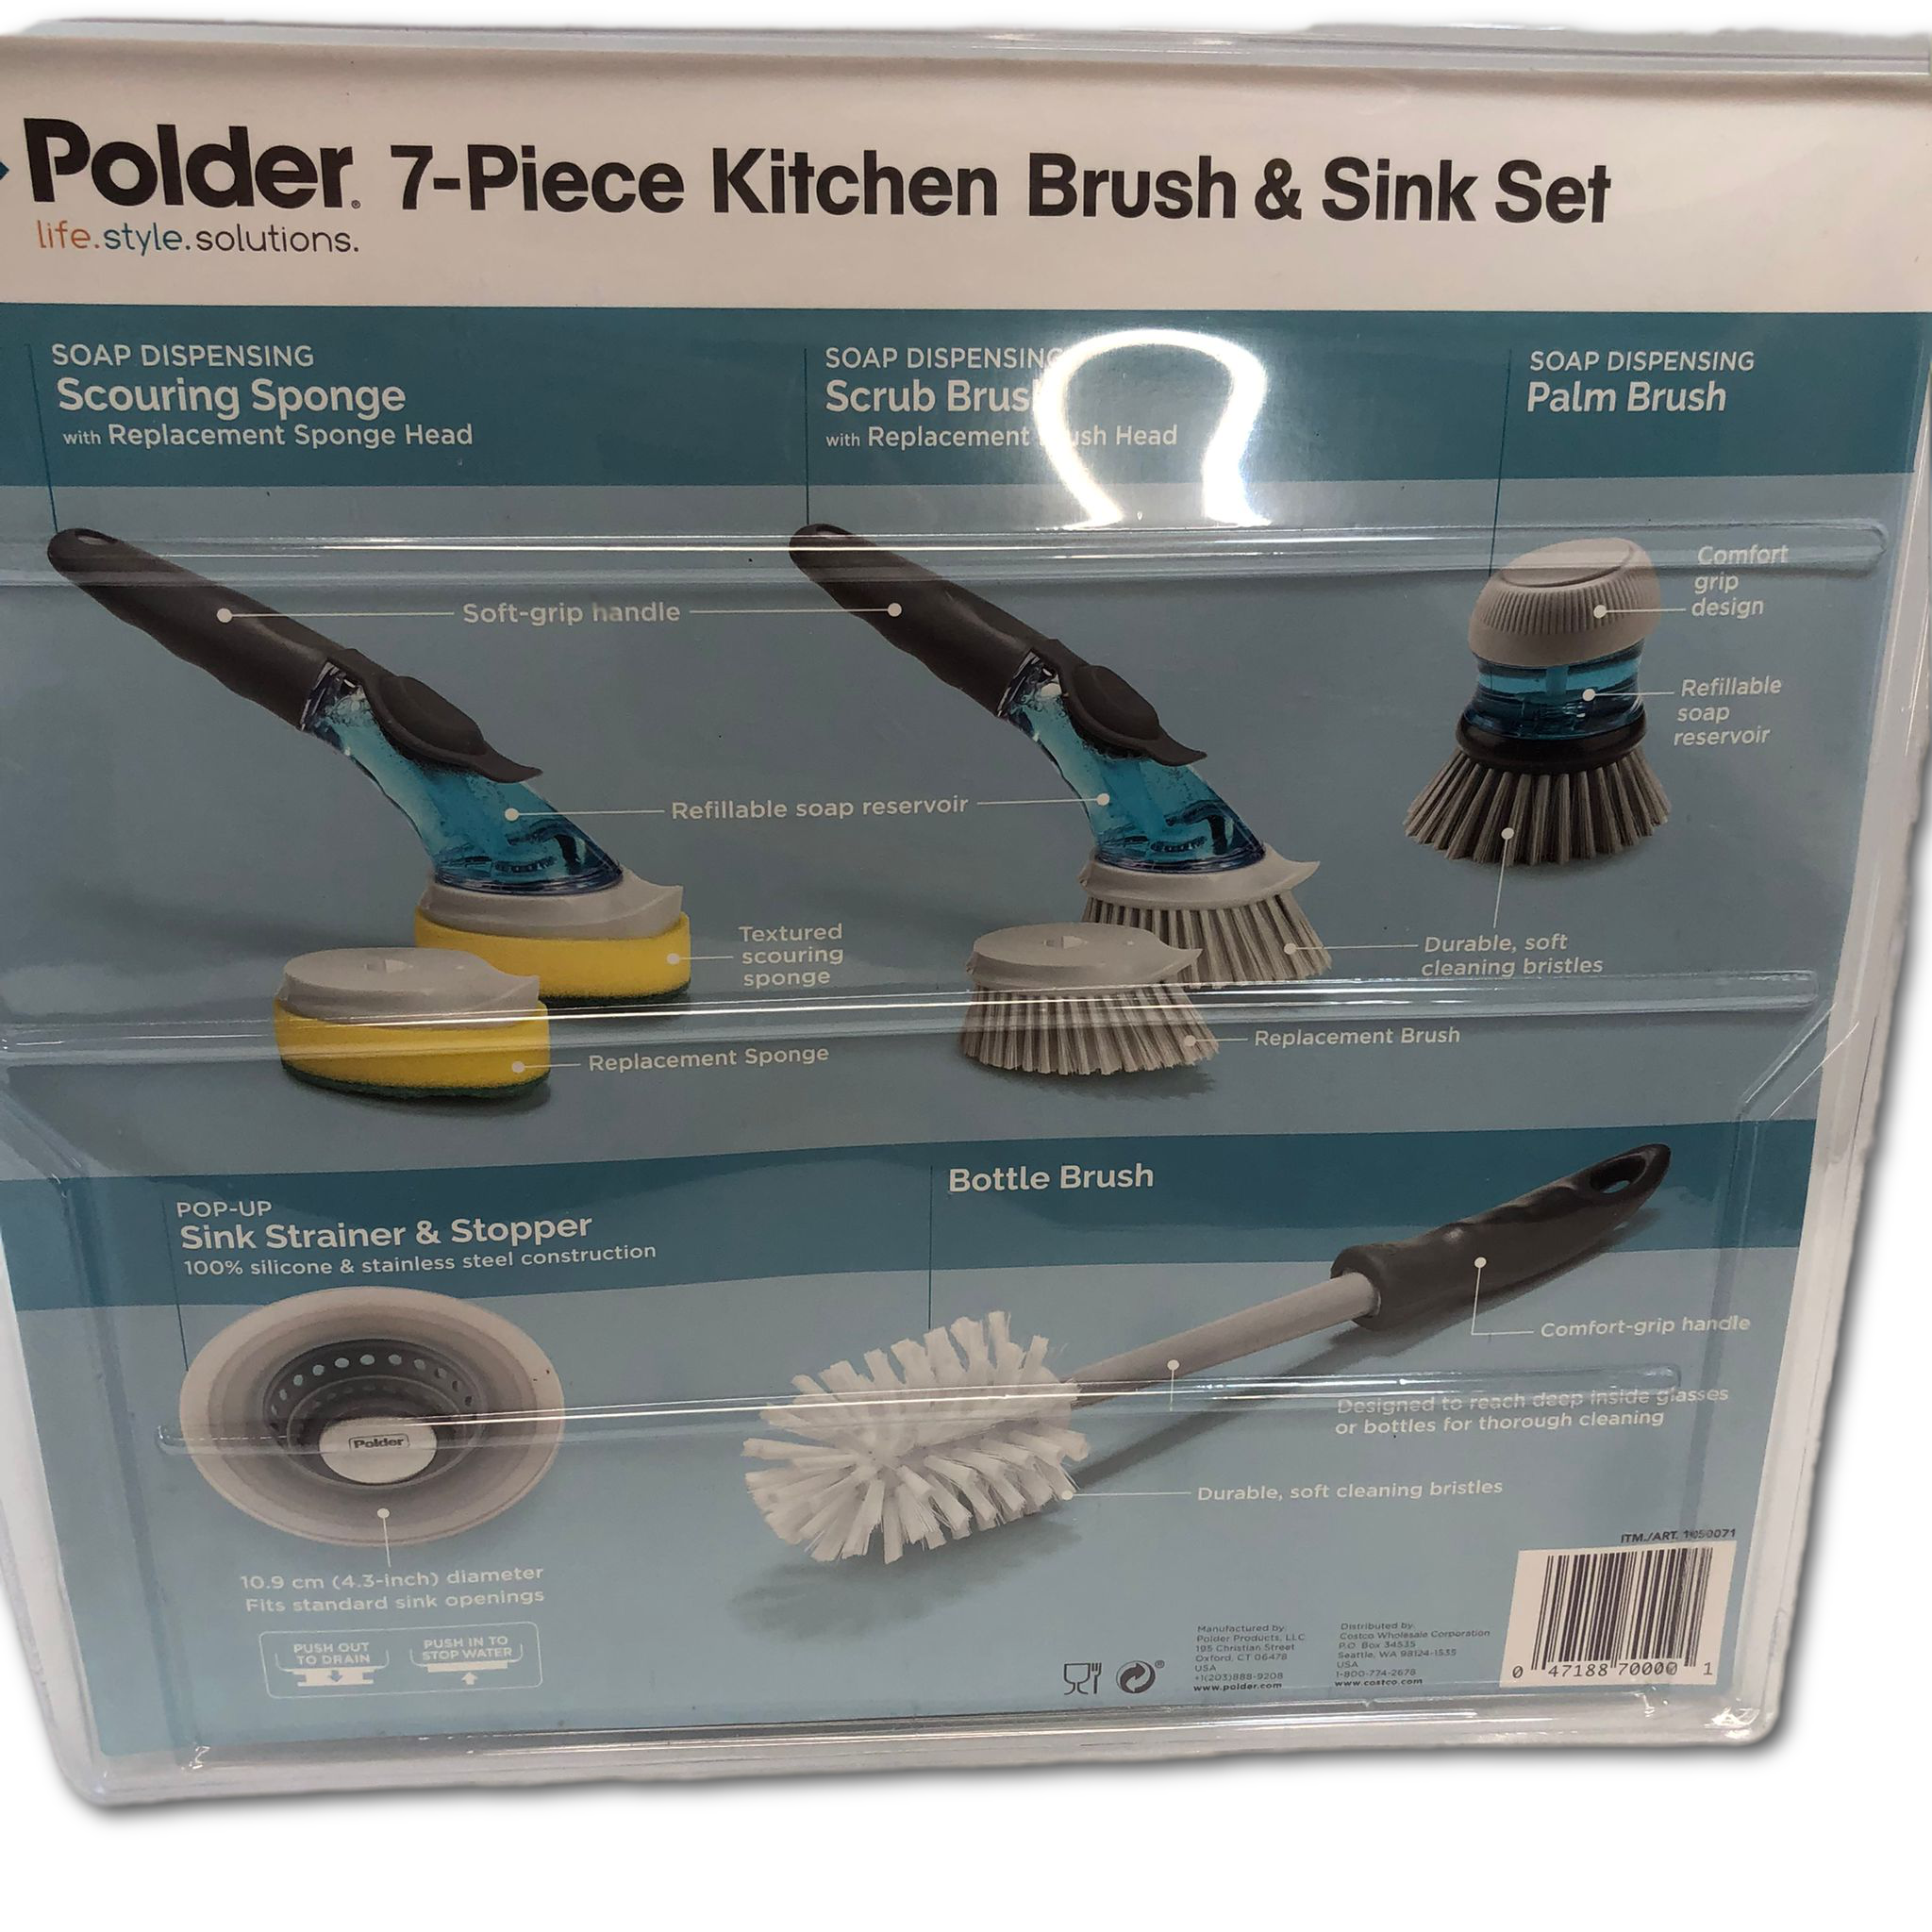 Polder 7-piece Kitchen Brush & Sink Set